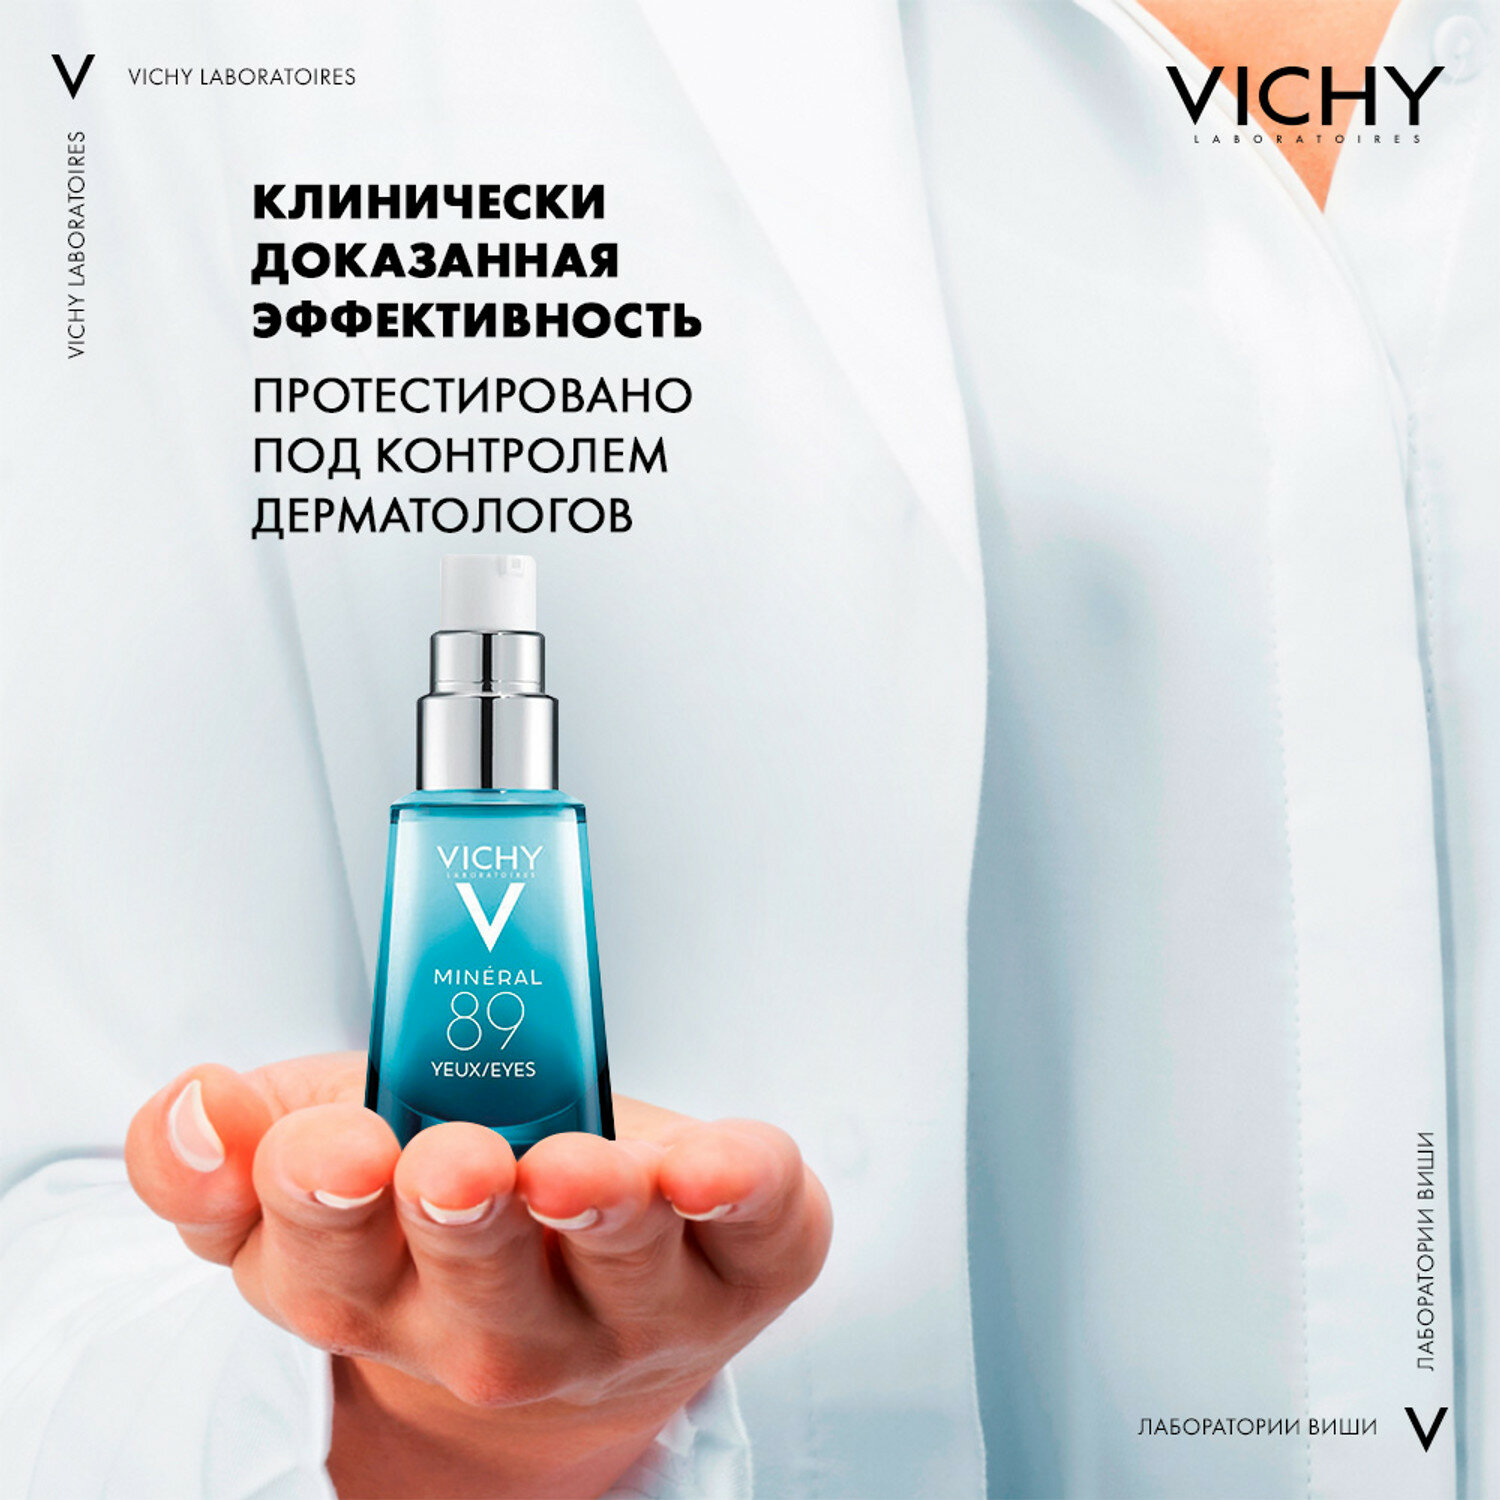 VICHY Набор для очищения и ухода: сыворотка для глаз Mineral 89 15 мл + мицеллярная вода 100 мл